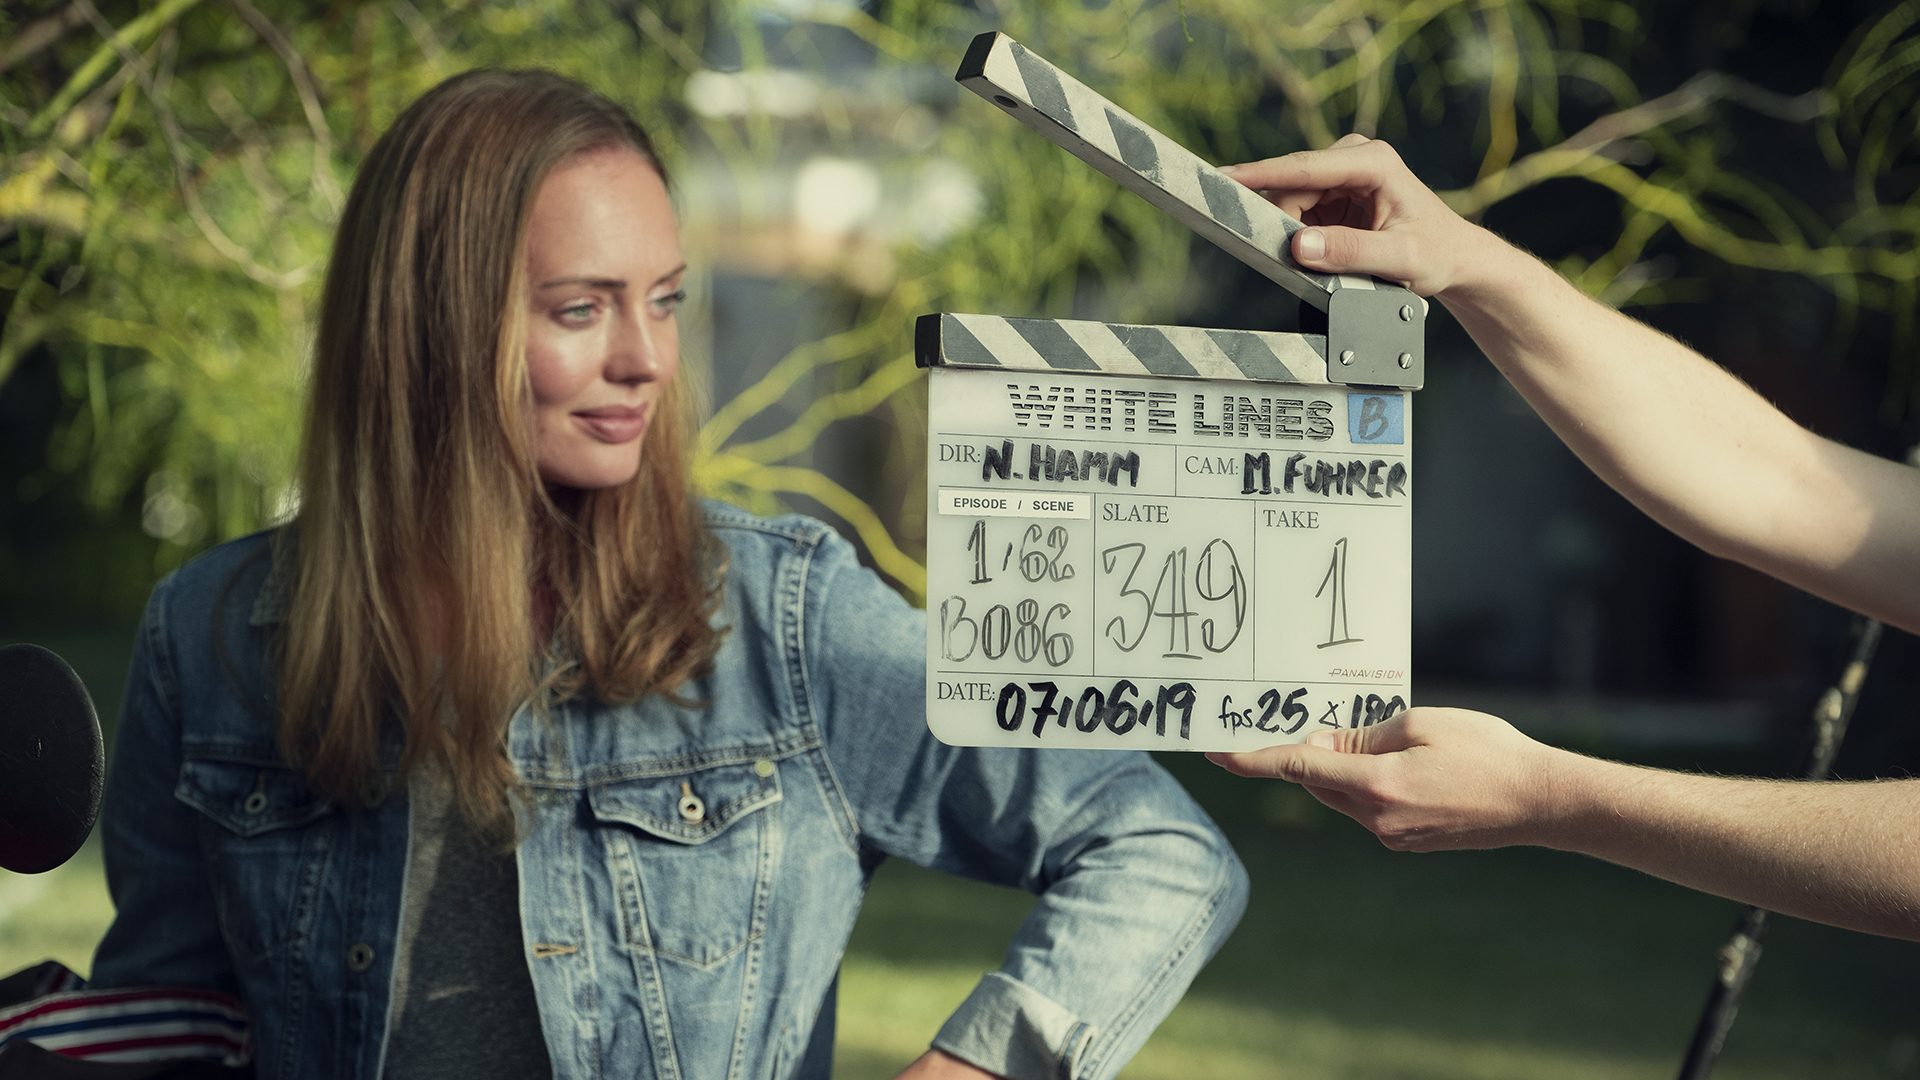 WHITE LINES | Com uma narrativa viciante a série mostra seu potencial!